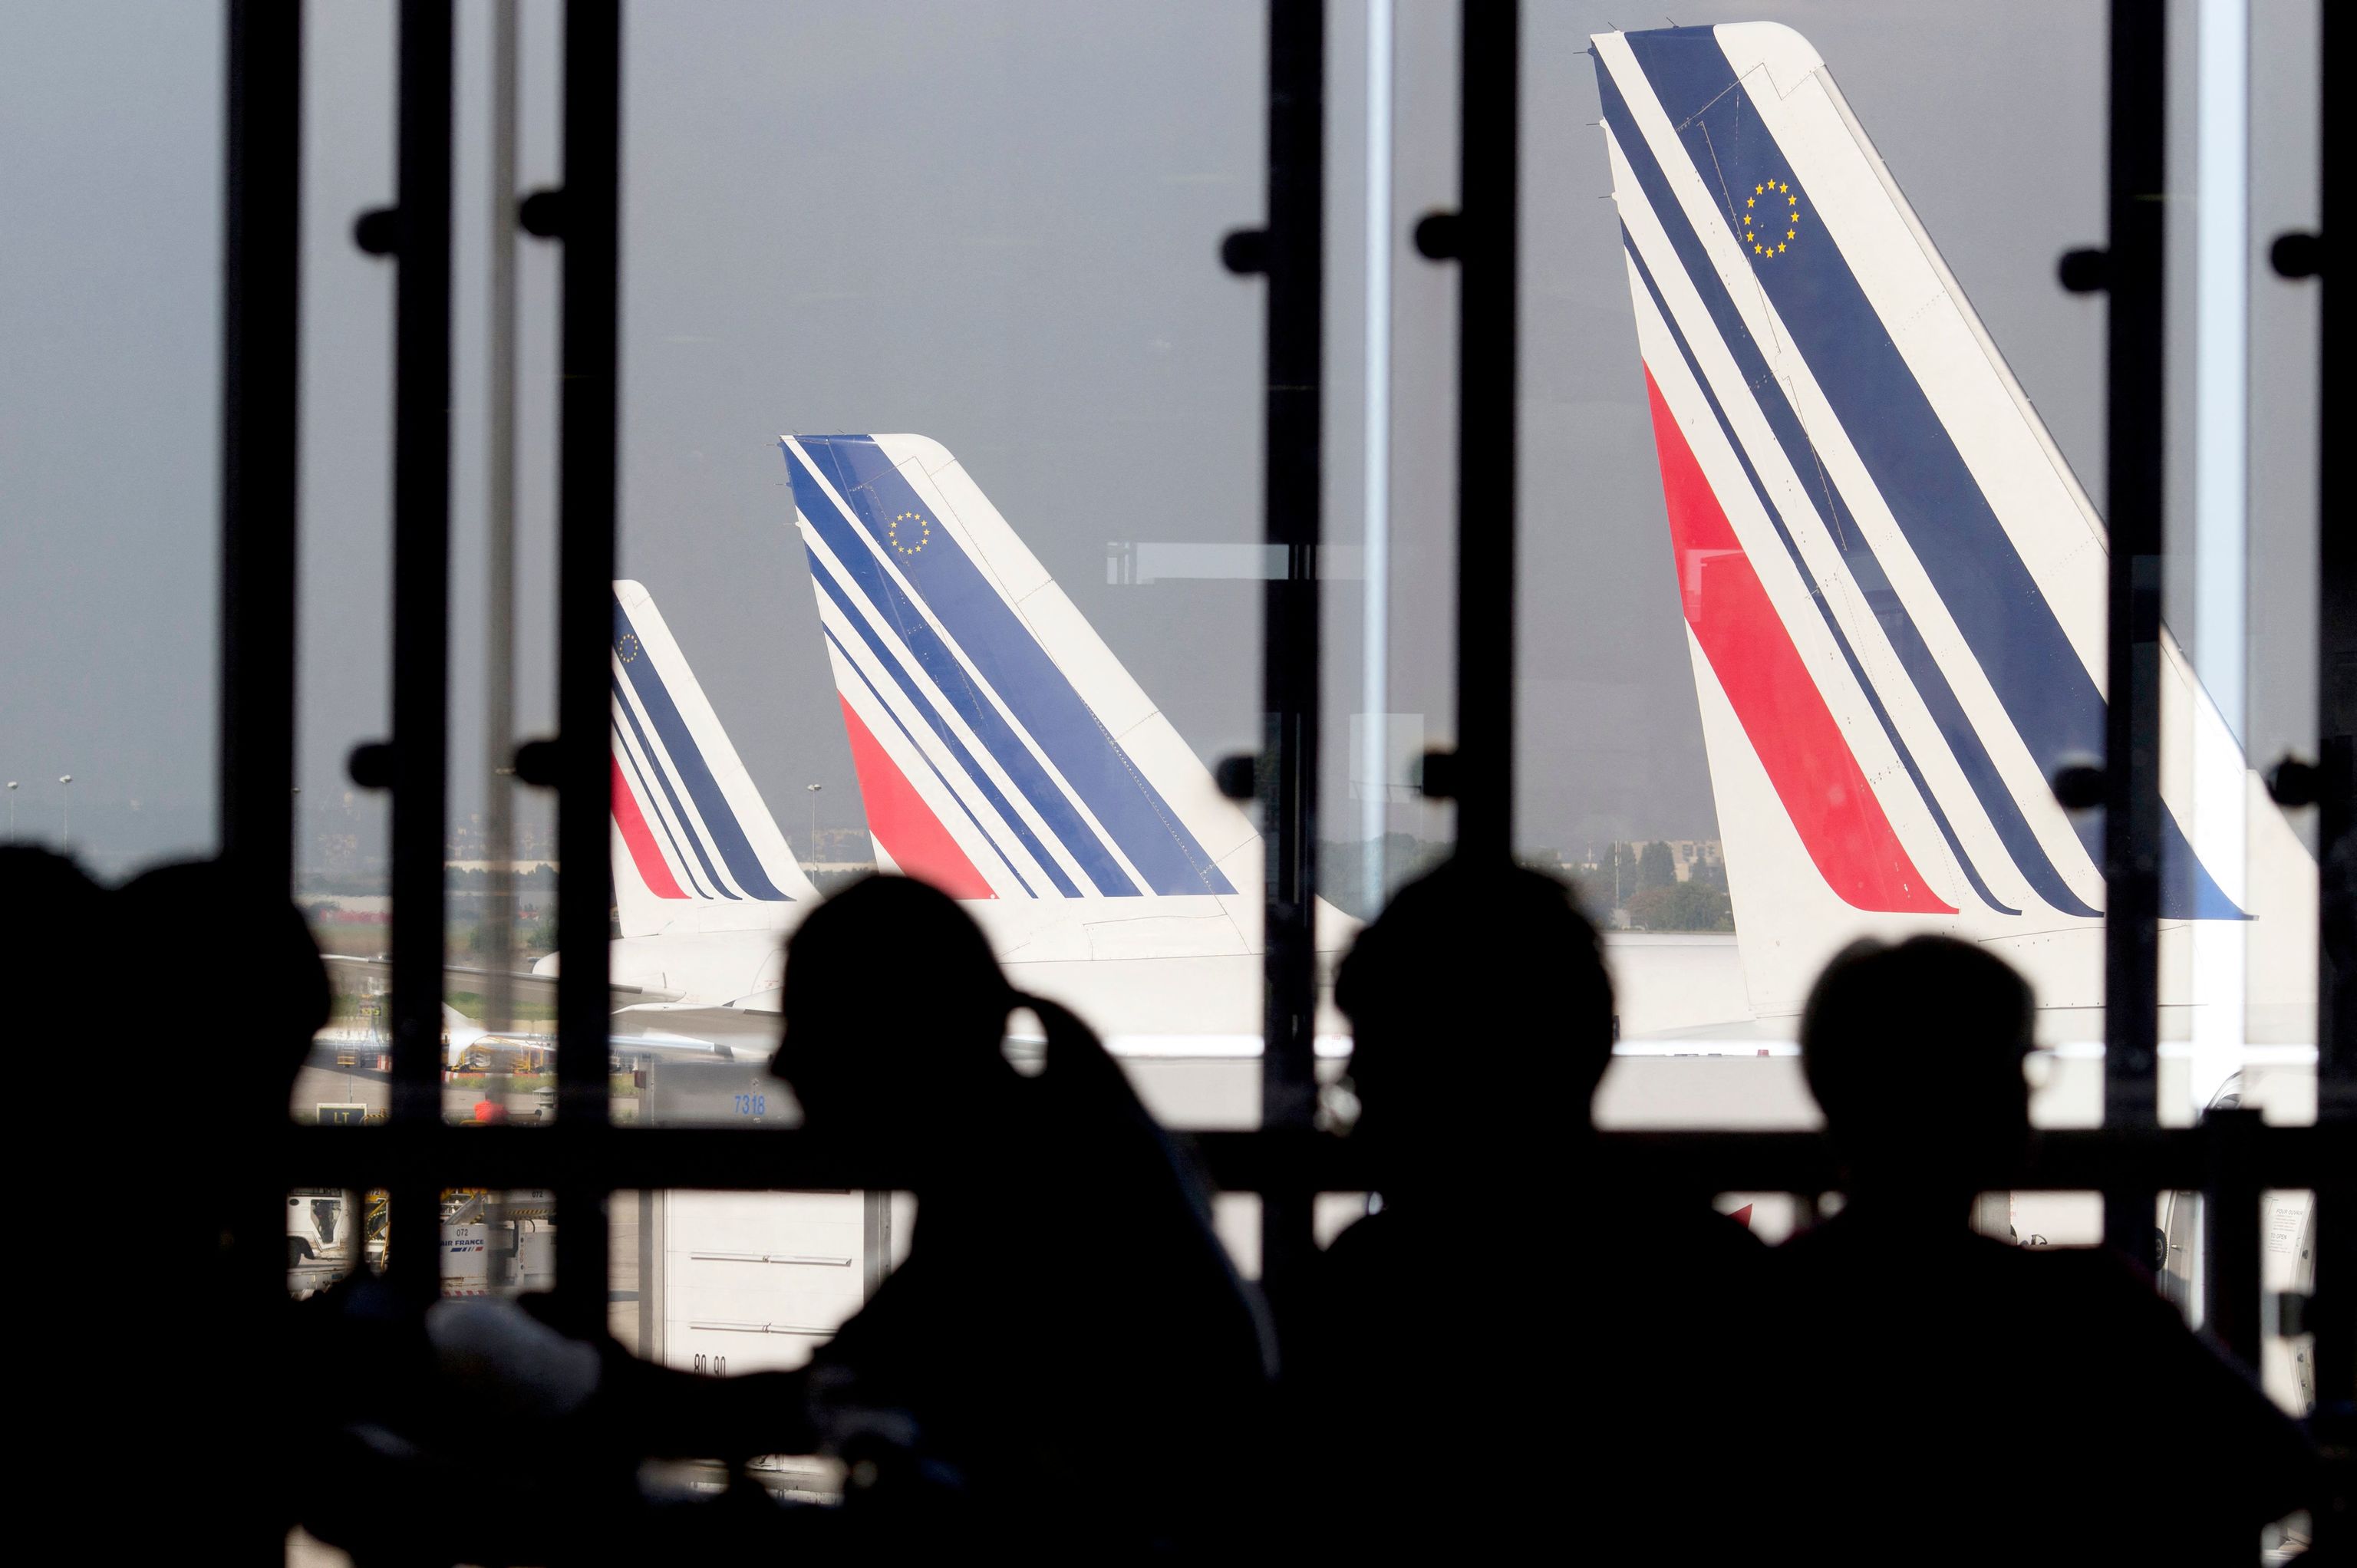 Foo de archivo tomada el 15 de septiembre de 2014 los pasajeros esperan en una sala de espera mientras los aviones de Air France se ven detrás en el aeropuerto de París-Orly